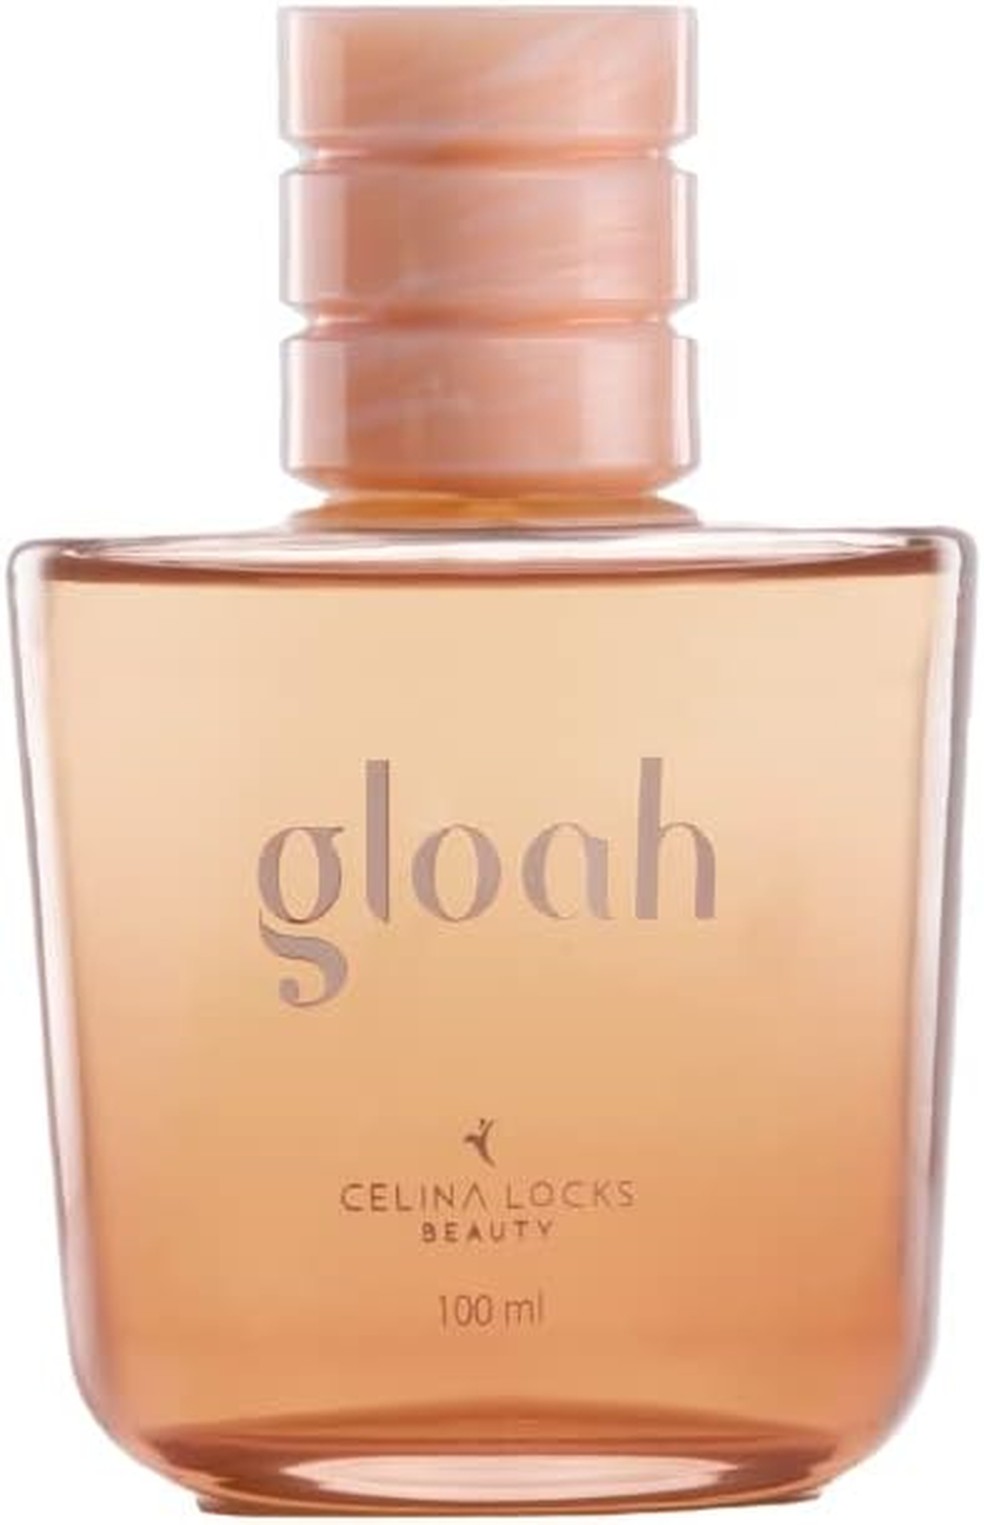 Gloah perfume capilar — Foto: Reprodução